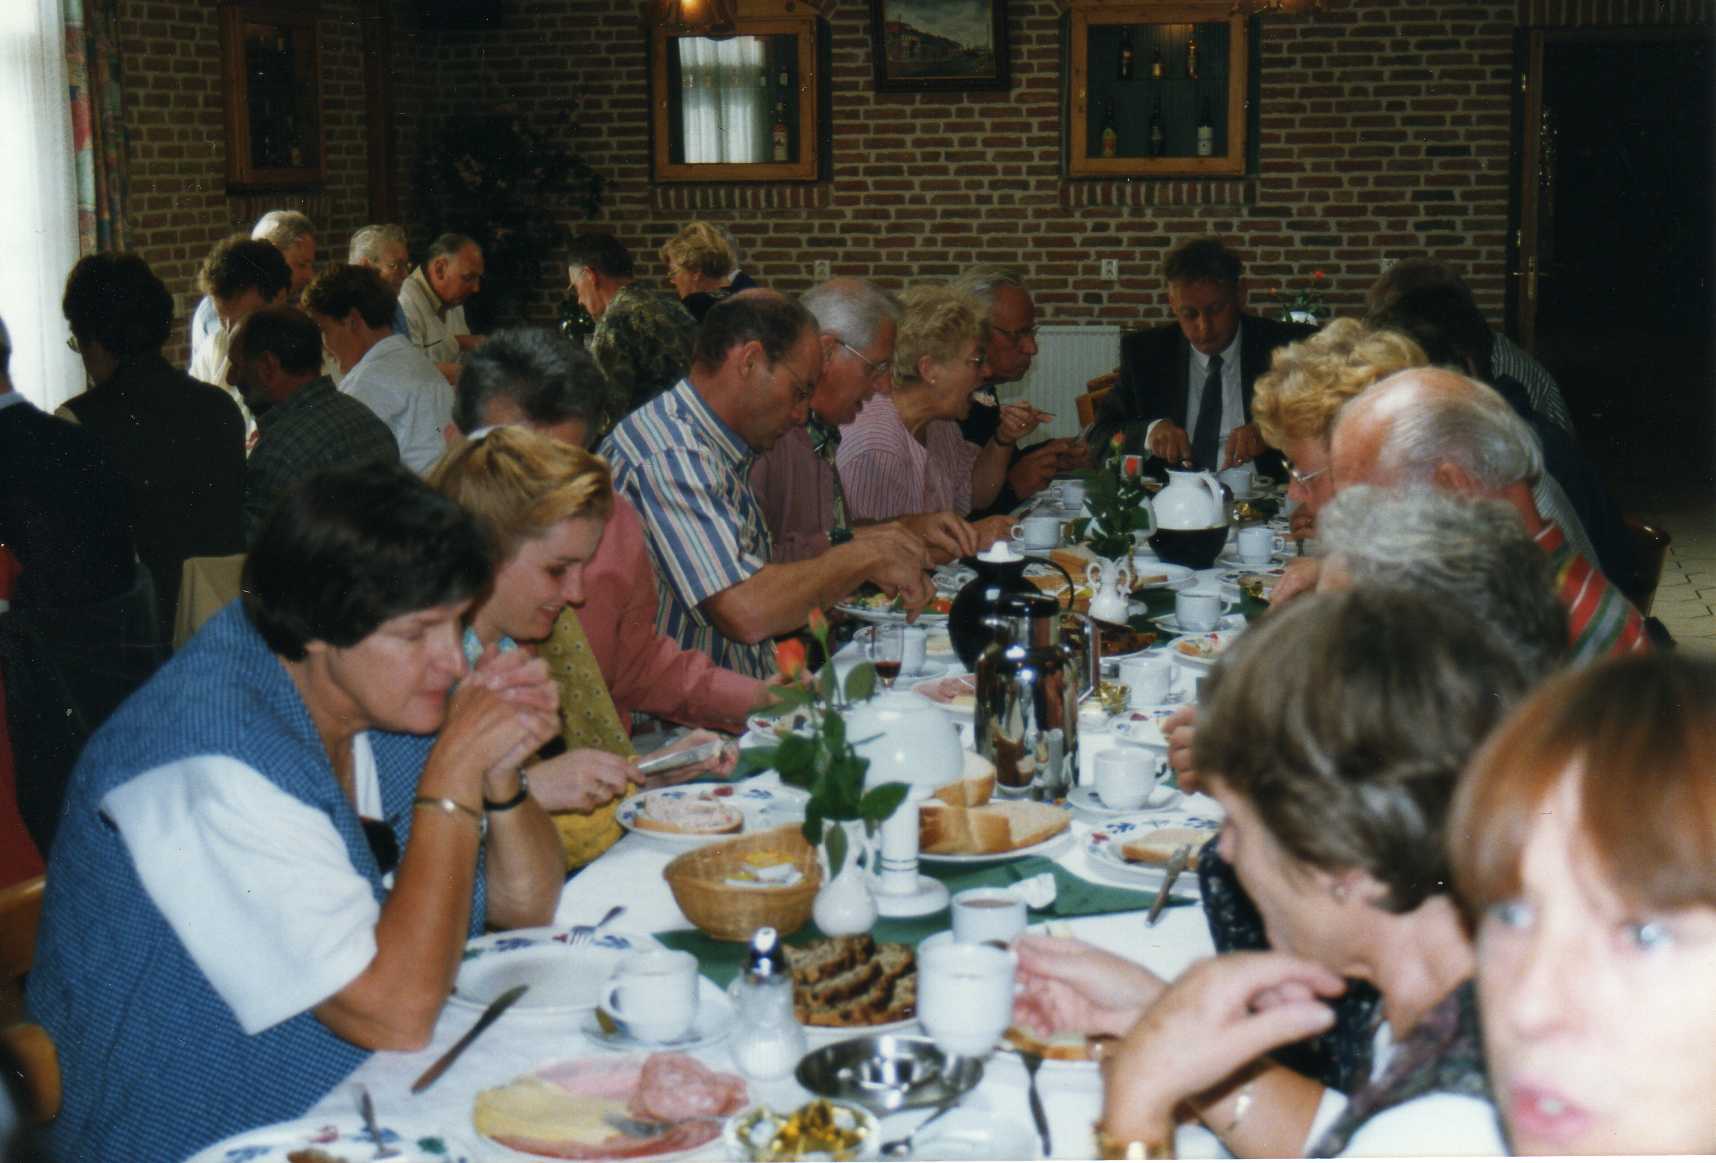 broodmaaltijd dagje uit 2000